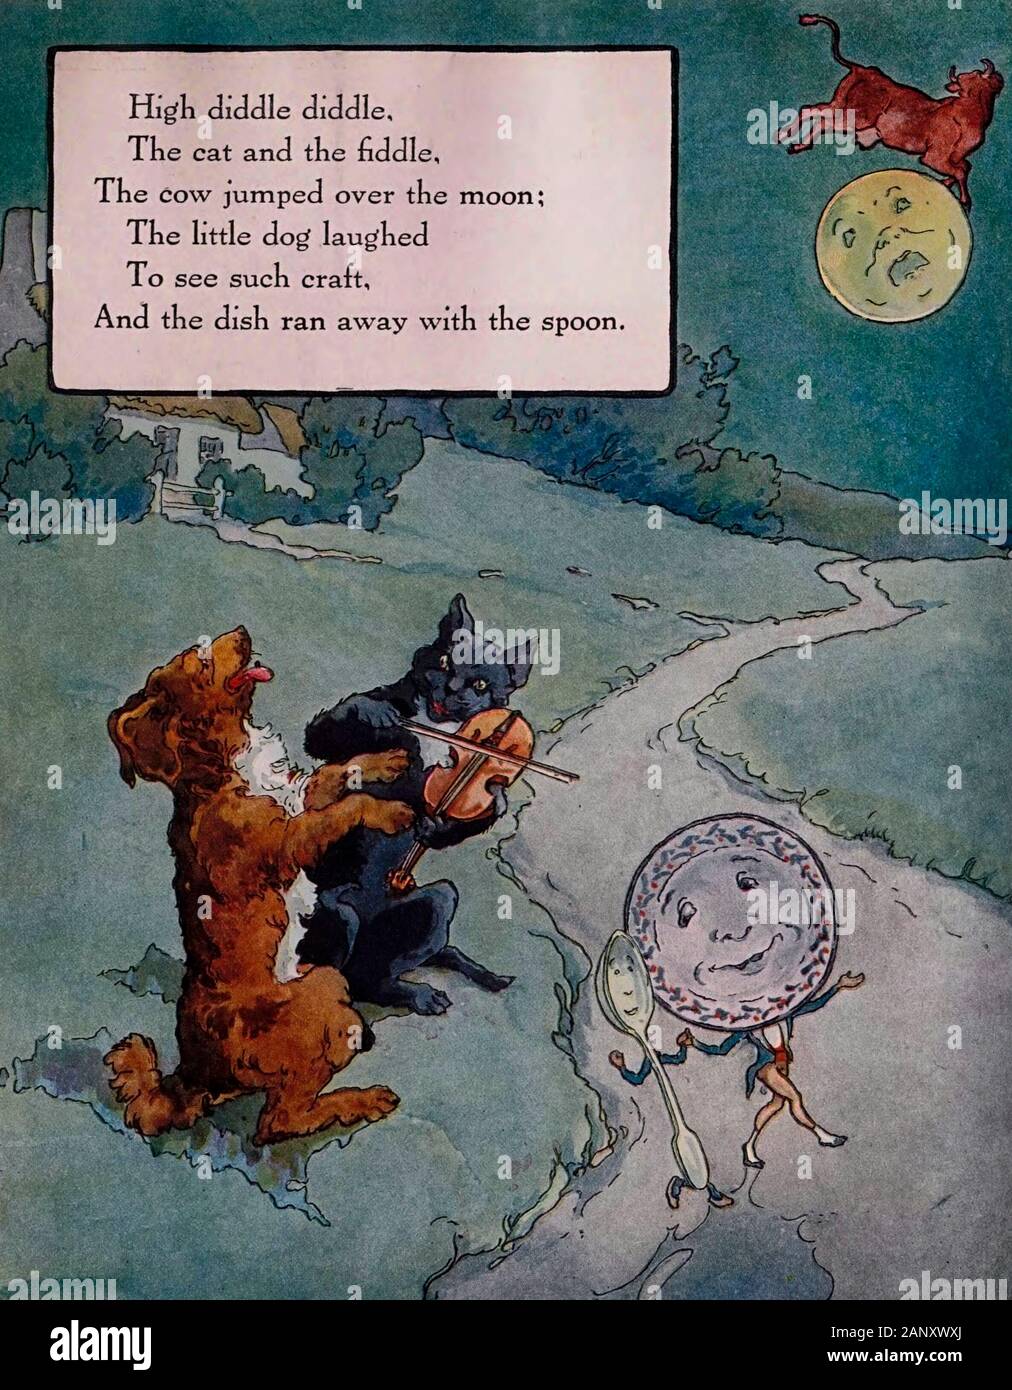 Alta Diddle Diddle, el gato y el violín, la Vaca saltó por encima de la luna. El perrito rió para ver este tipo de embarcaciones y el plato se escapó con la cuchara - Ilustración Vintage de rima musical Foto de stock